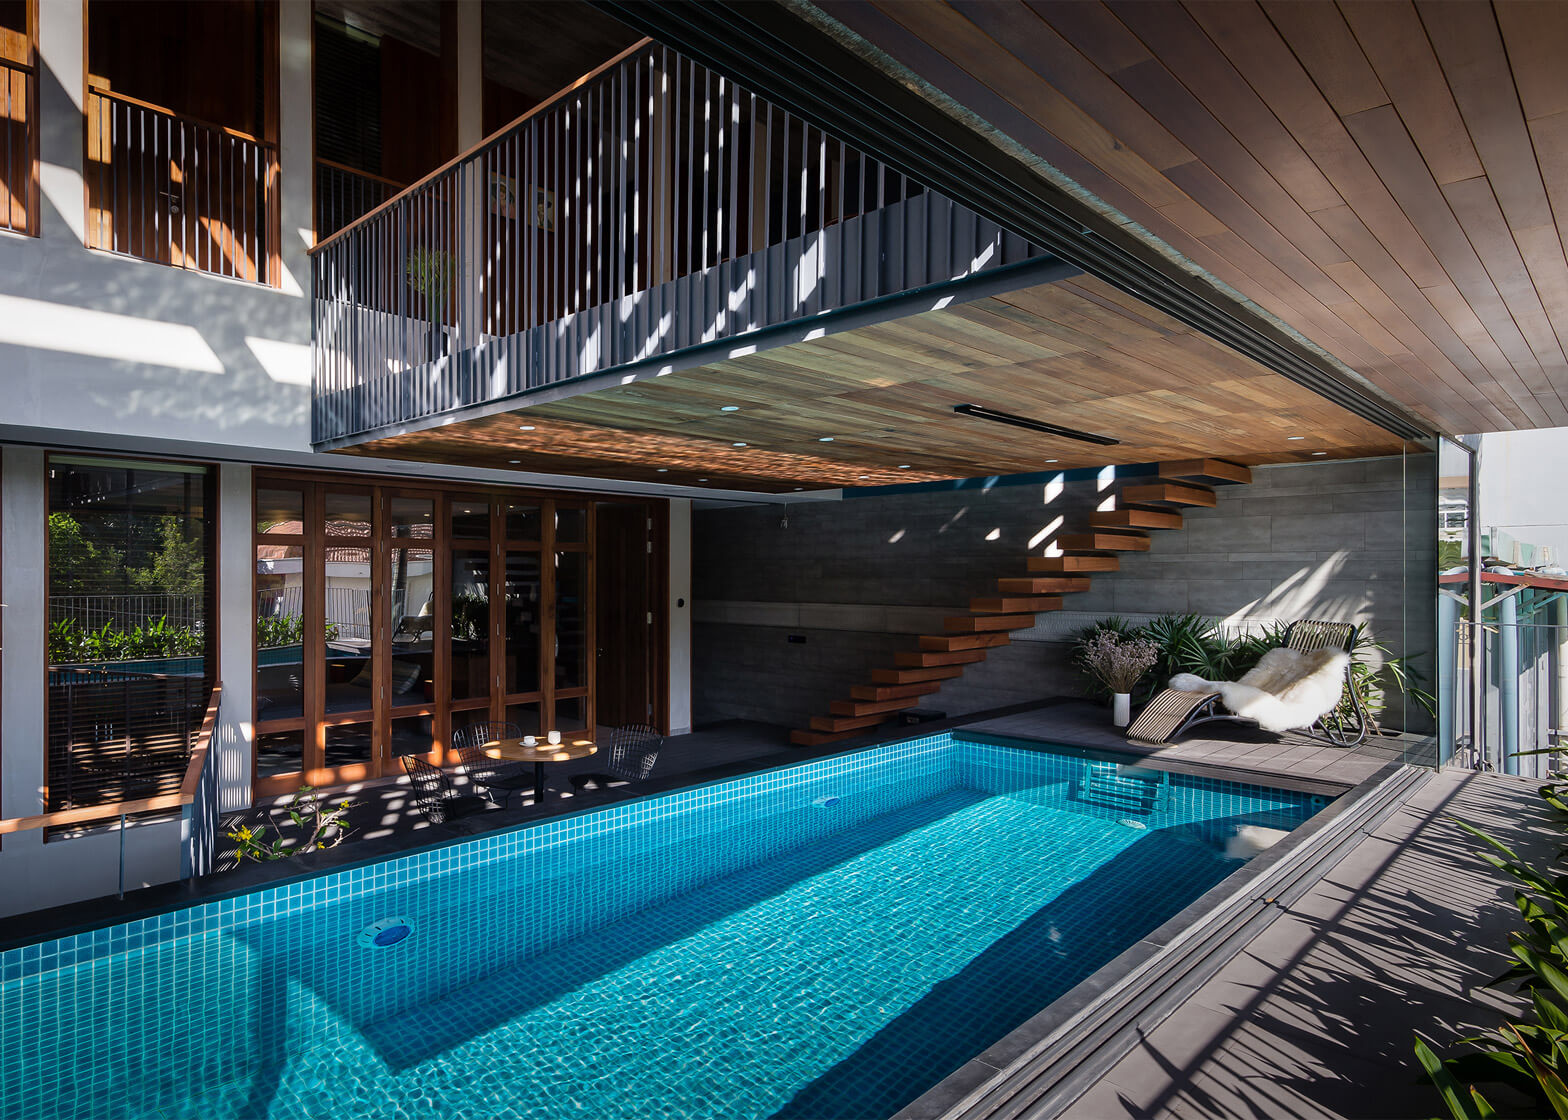 Thiết kế biệt thự 1 tầng có bể bơi đảm bảo thẩm mỹ và yếu tố phong thủy